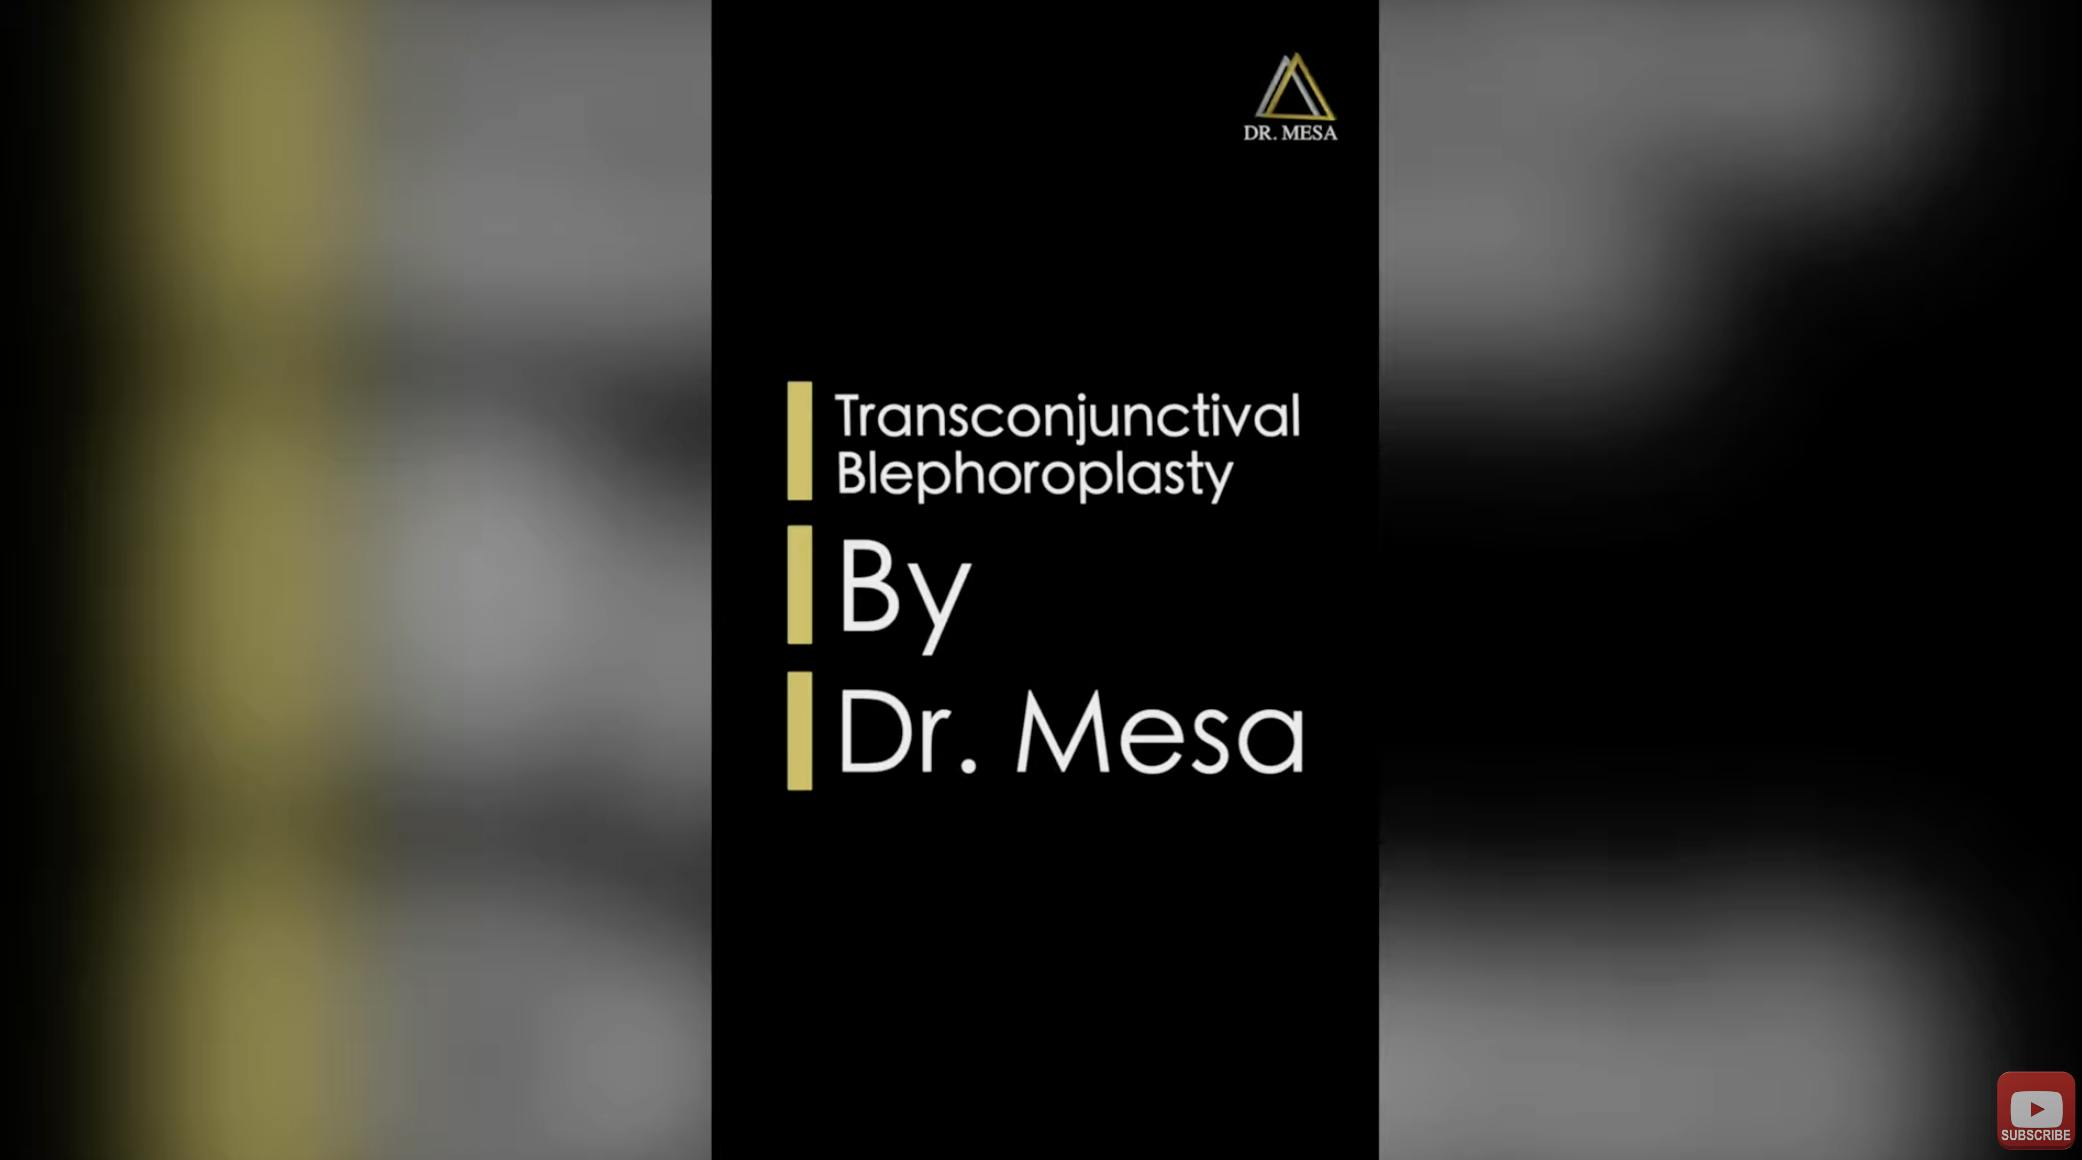 Dr. Mesa